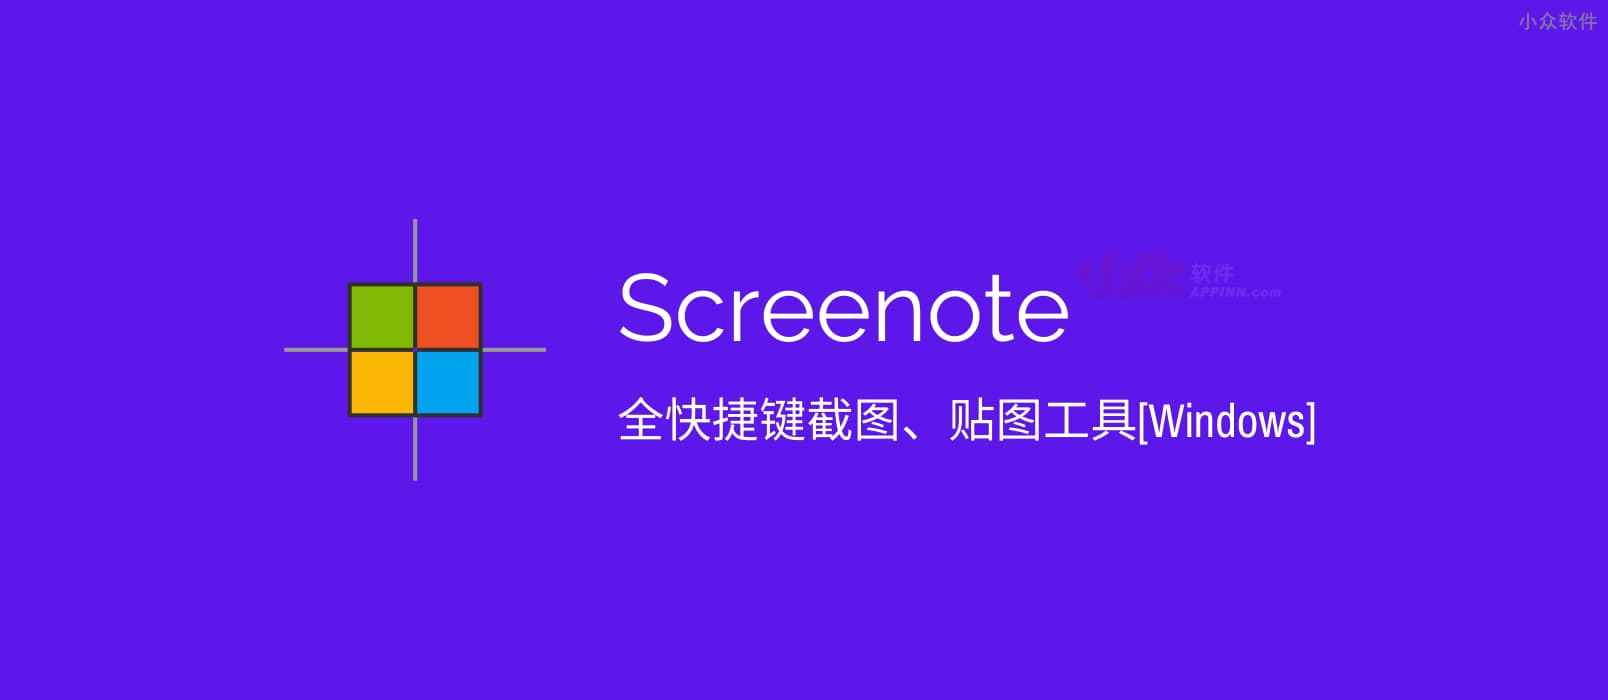 Screenote – 全快捷键截图、贴图工具[Windows]